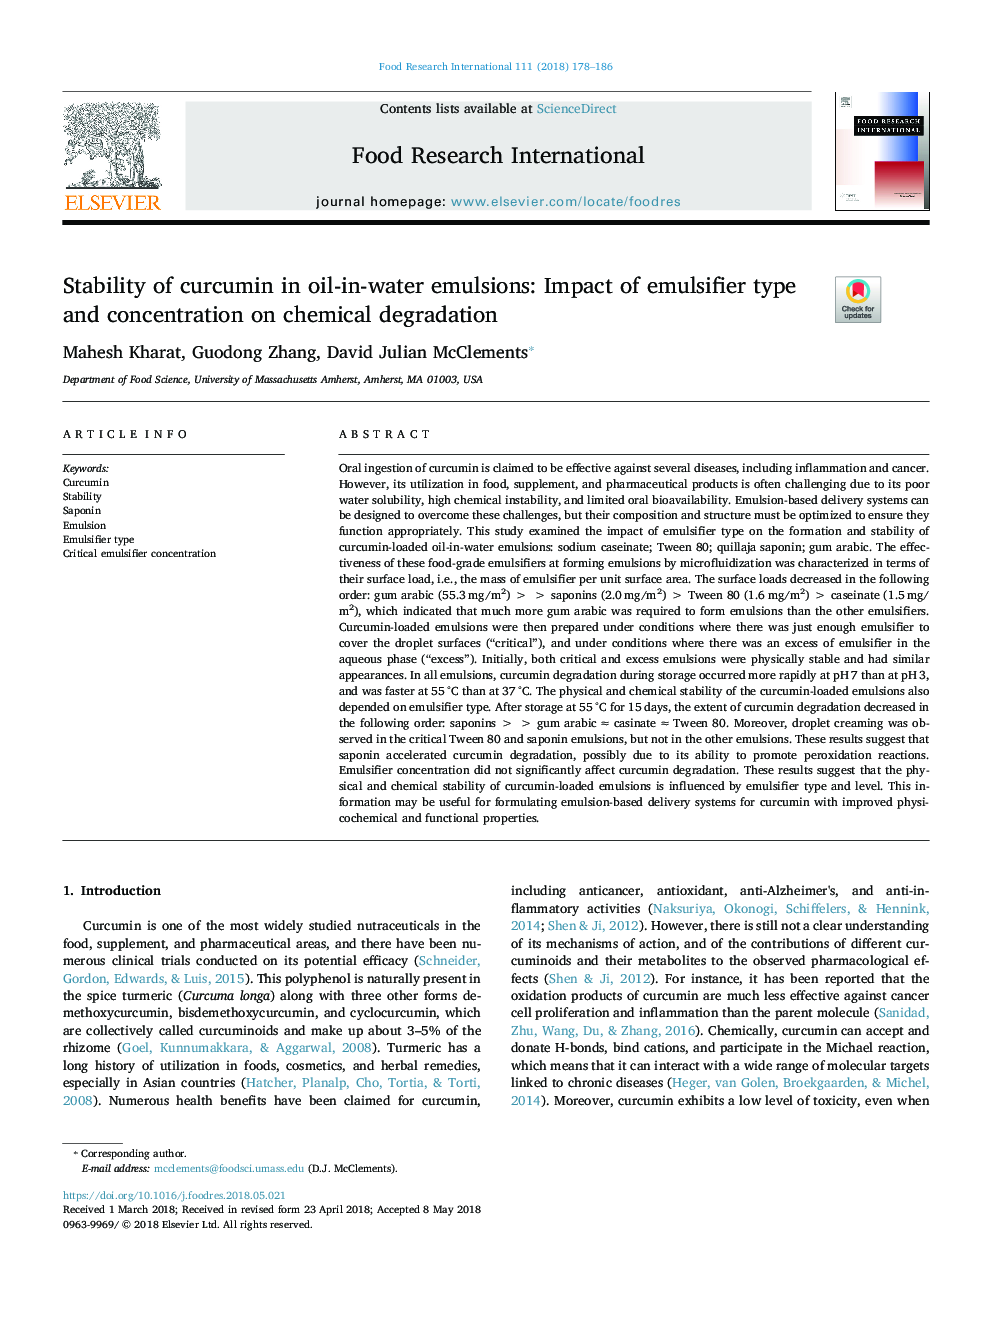 پایداری کرکومین در امولسیون روغن در آب: تاثیر نوع و غلظت امولسیفایر بر تخلیه 